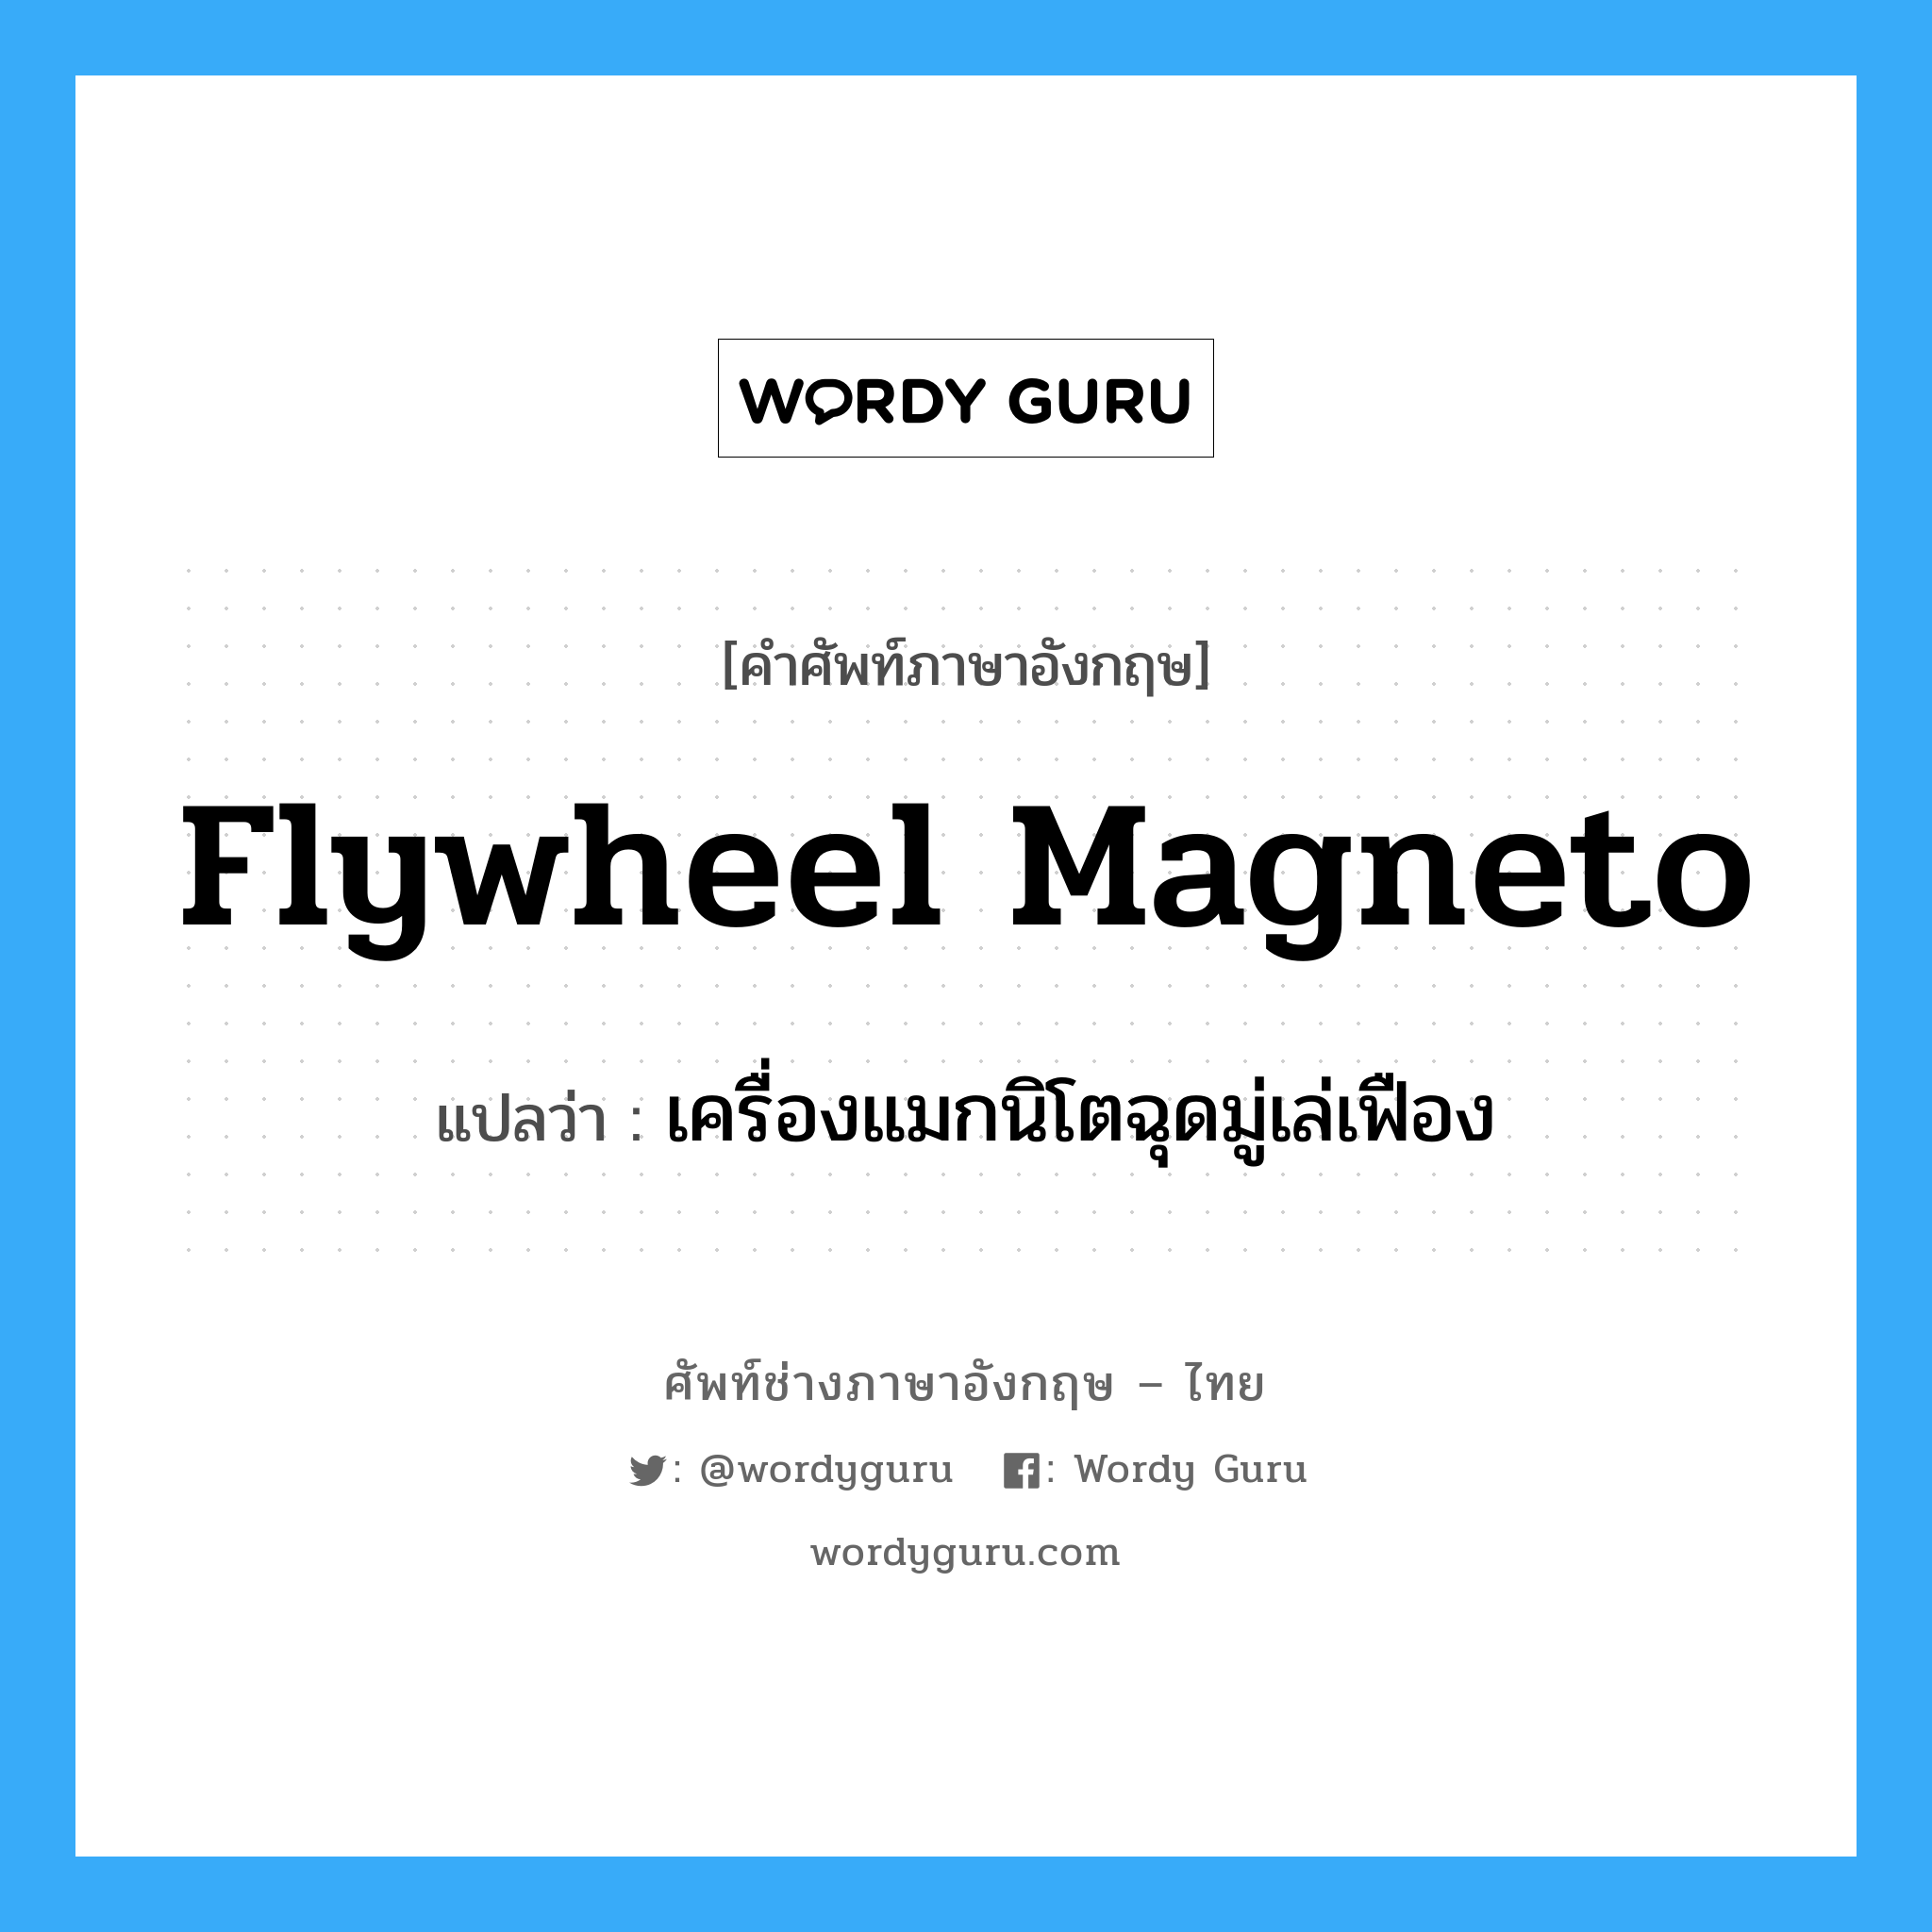 flywheel magneto แปลว่า?, คำศัพท์ช่างภาษาอังกฤษ - ไทย flywheel magneto คำศัพท์ภาษาอังกฤษ flywheel magneto แปลว่า เครื่องแมกนิโตฉุดมู่เล่เฟือง